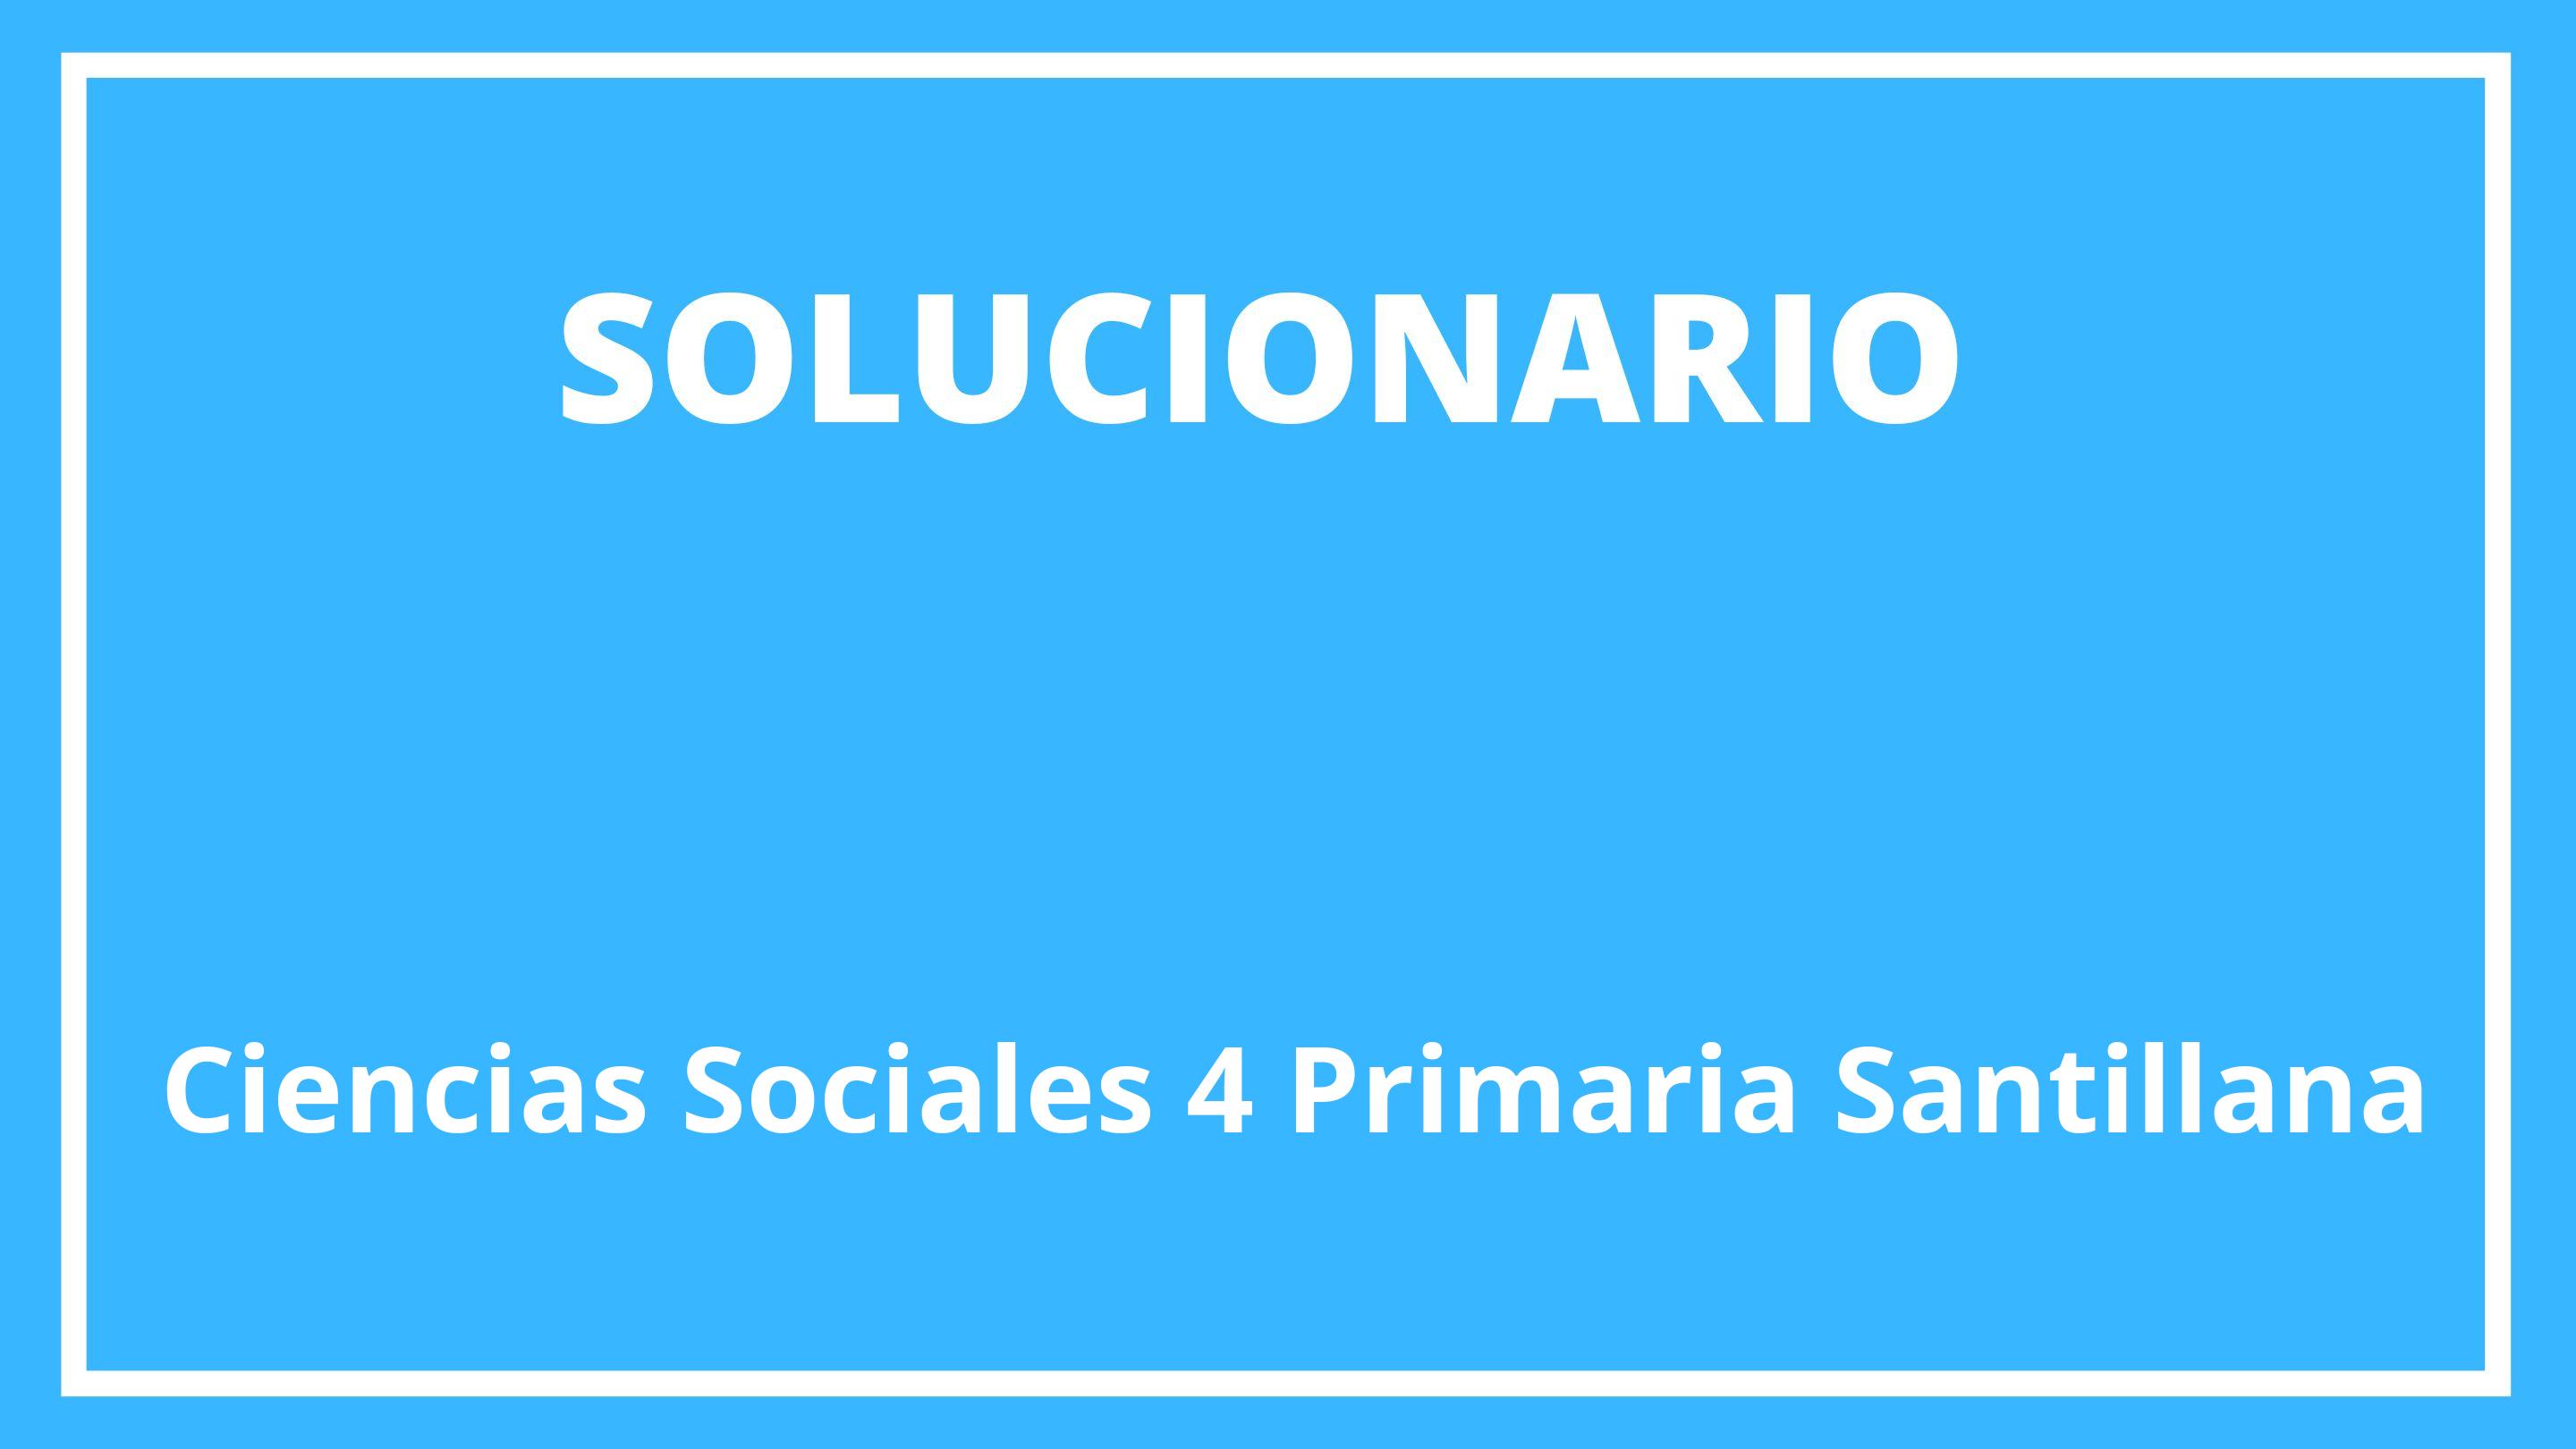 Solucionario Ciencias Sociales 4 Primaria Santillana